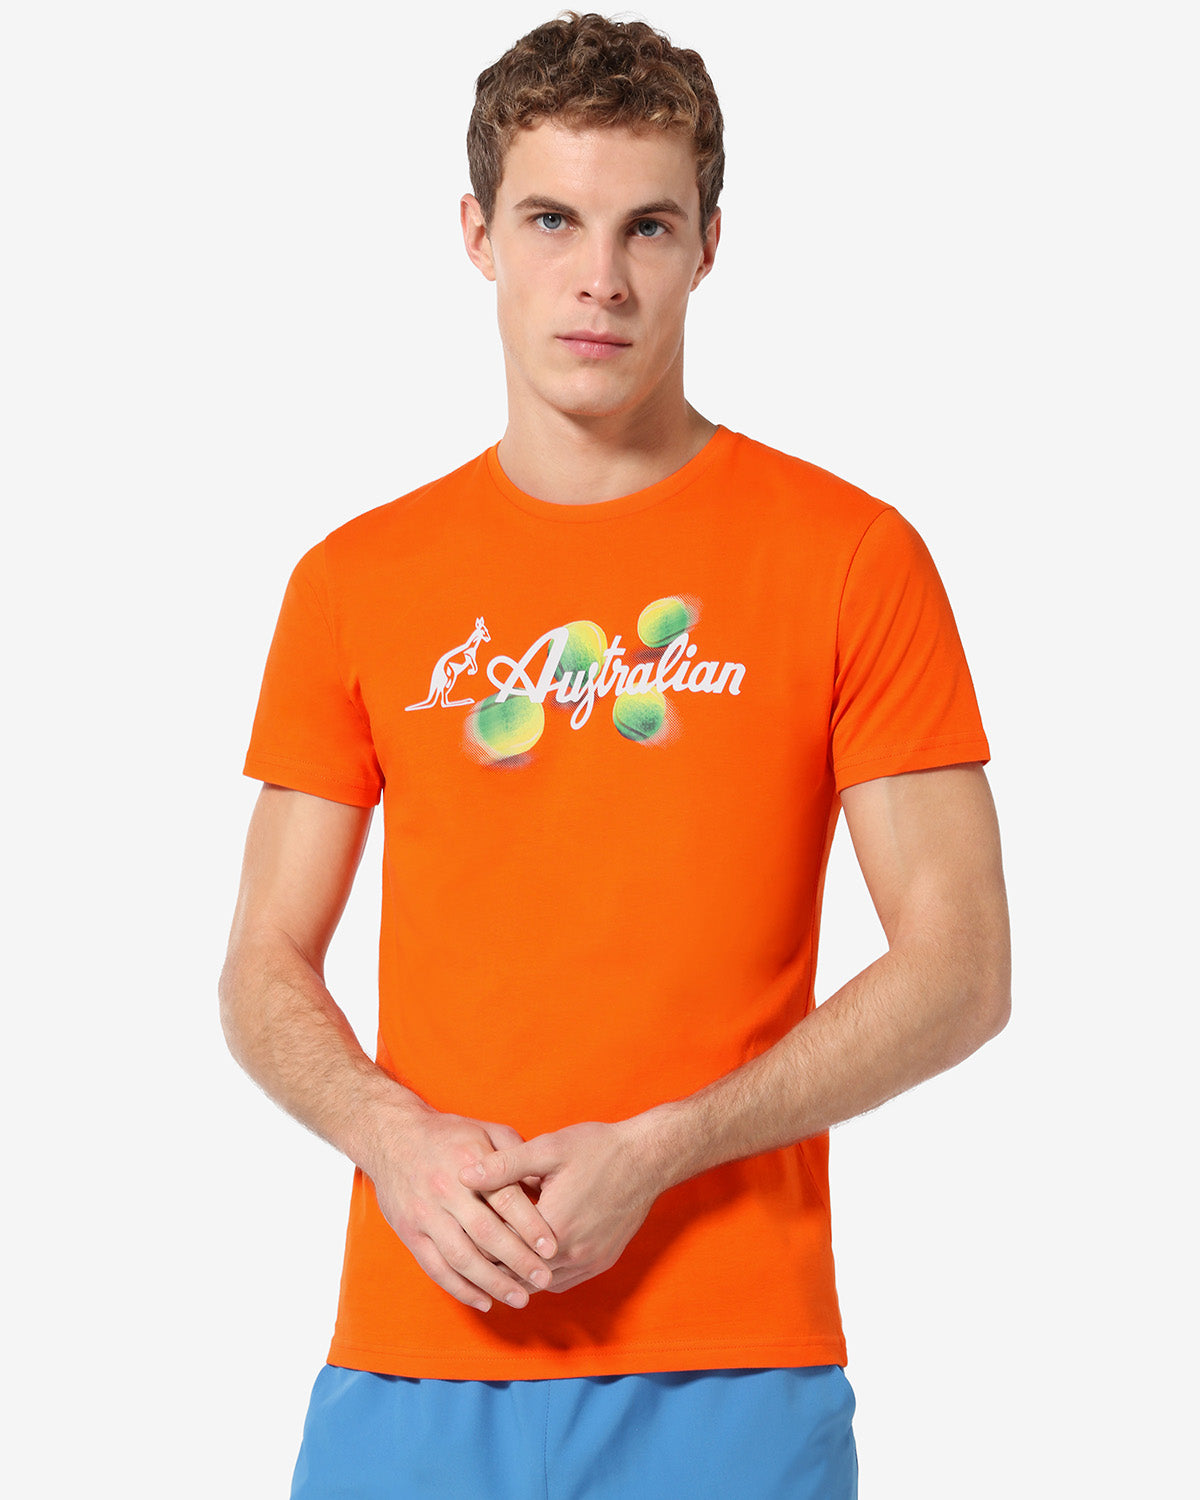 Balls T-shirt: Australian Tennis